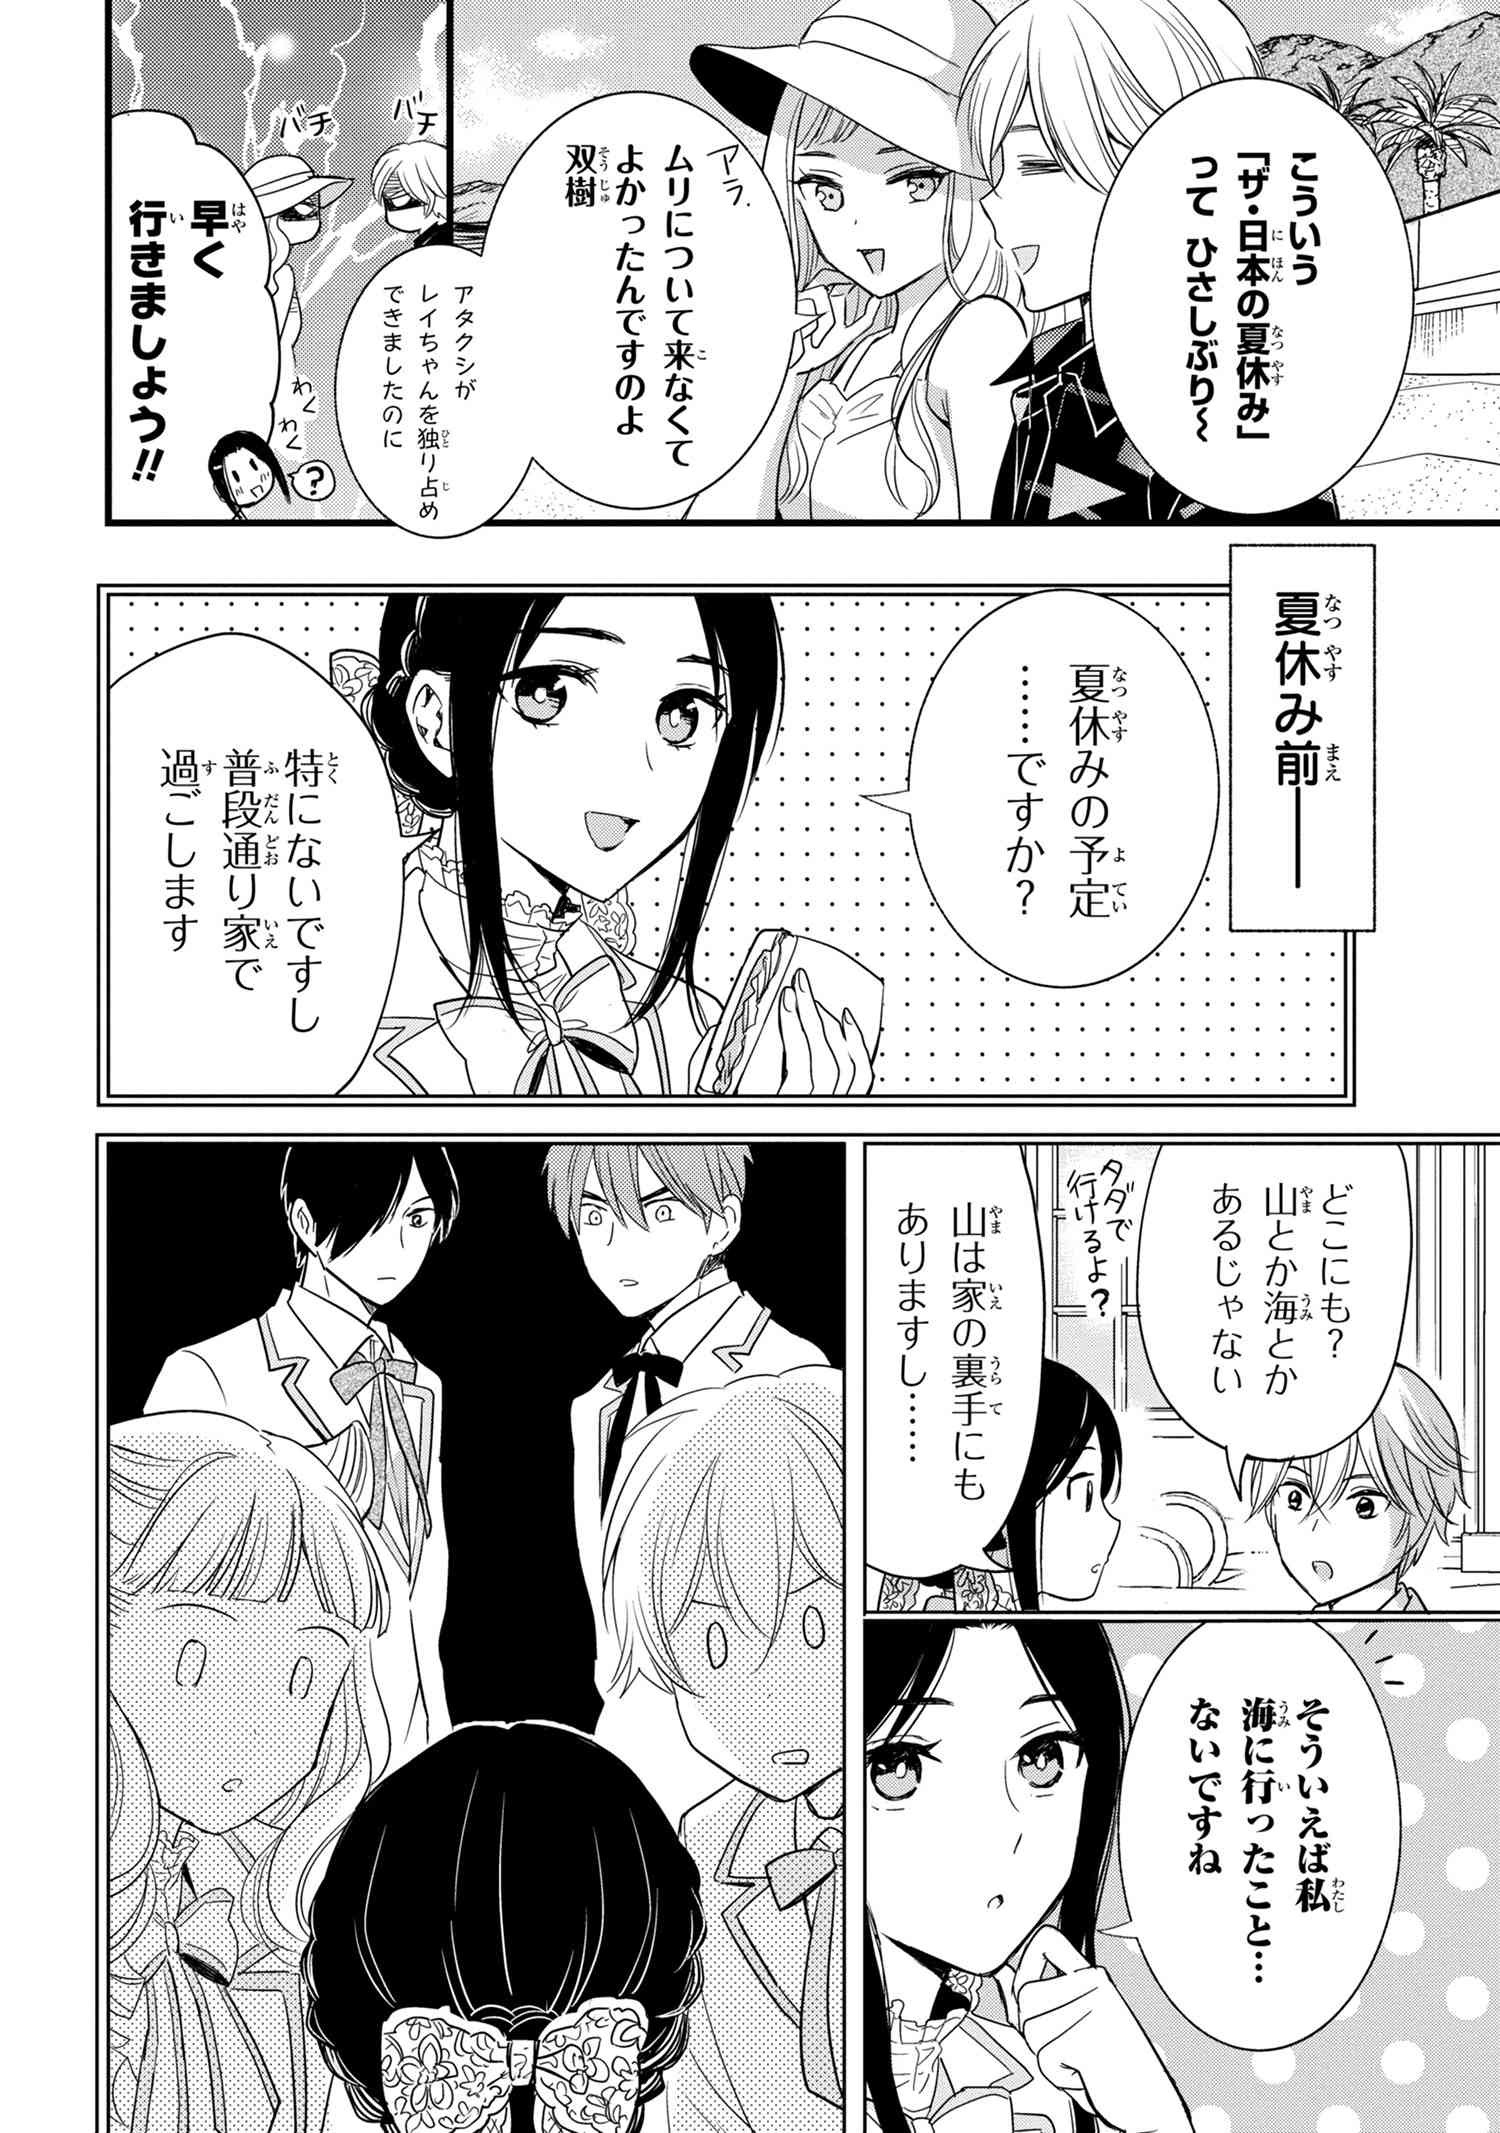 Reiko no Fuugi Akuyaku Reijou to Yobarete imasu ga, tada no Binbou Musume desu - Chapter 12.1 - Page 2